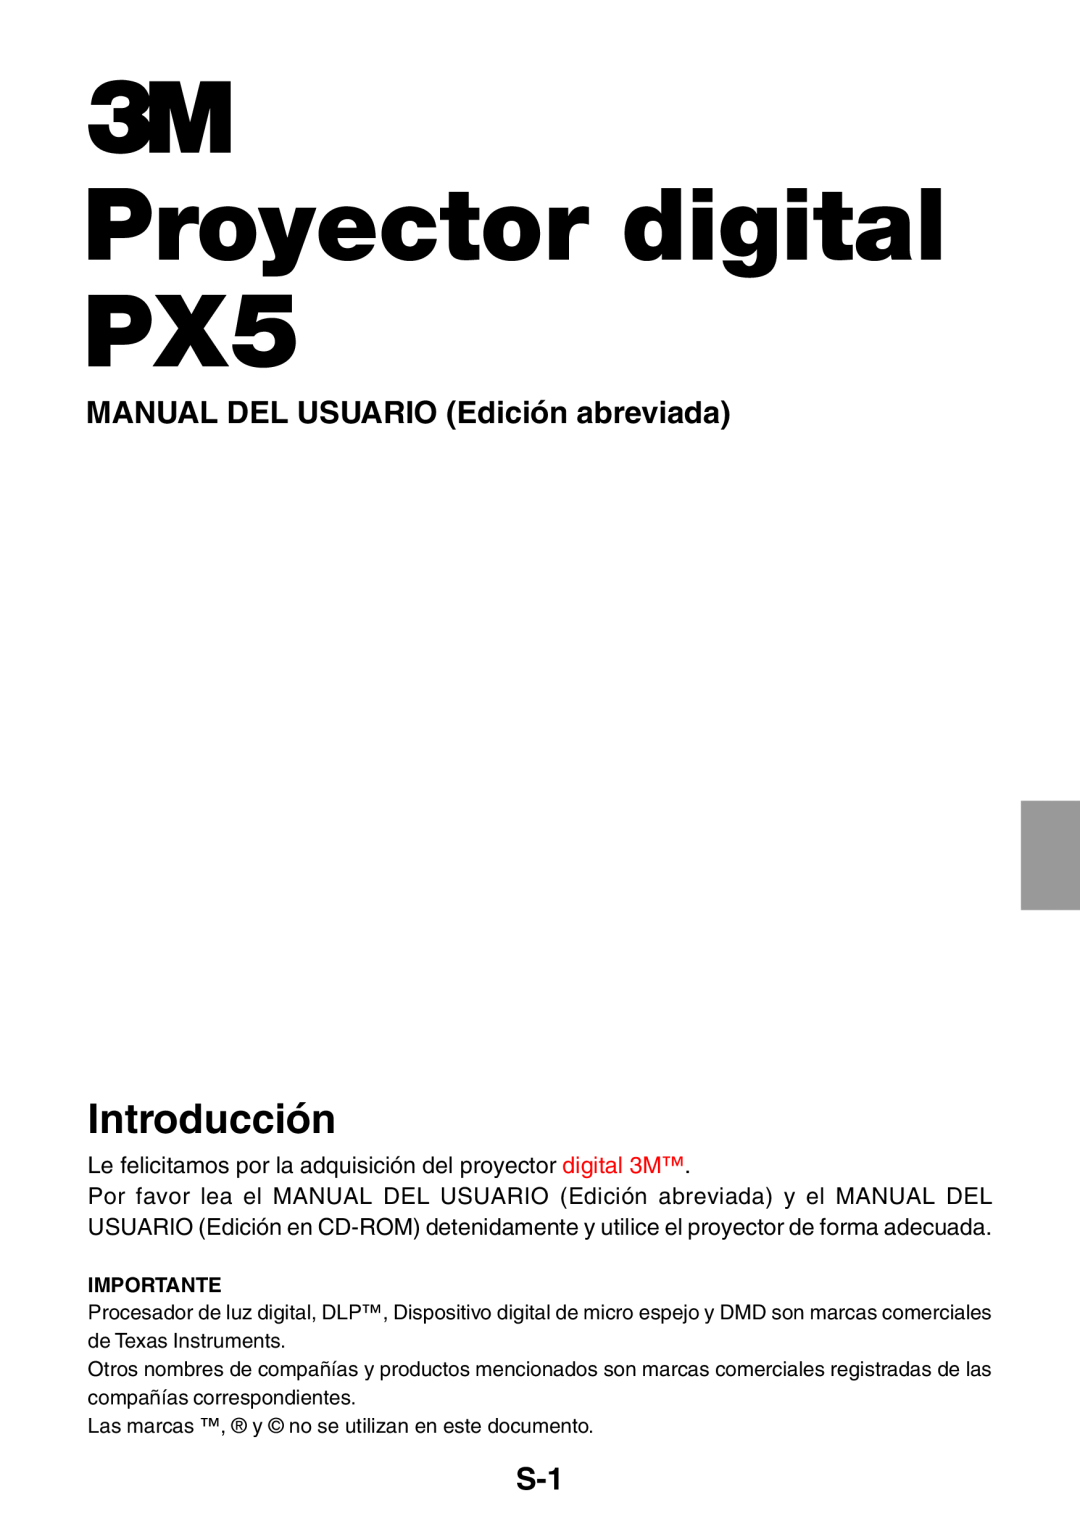 3M user manual Proyector digital PX5, Introducción, MANUAL DEL USUARIO Edición abreviada 